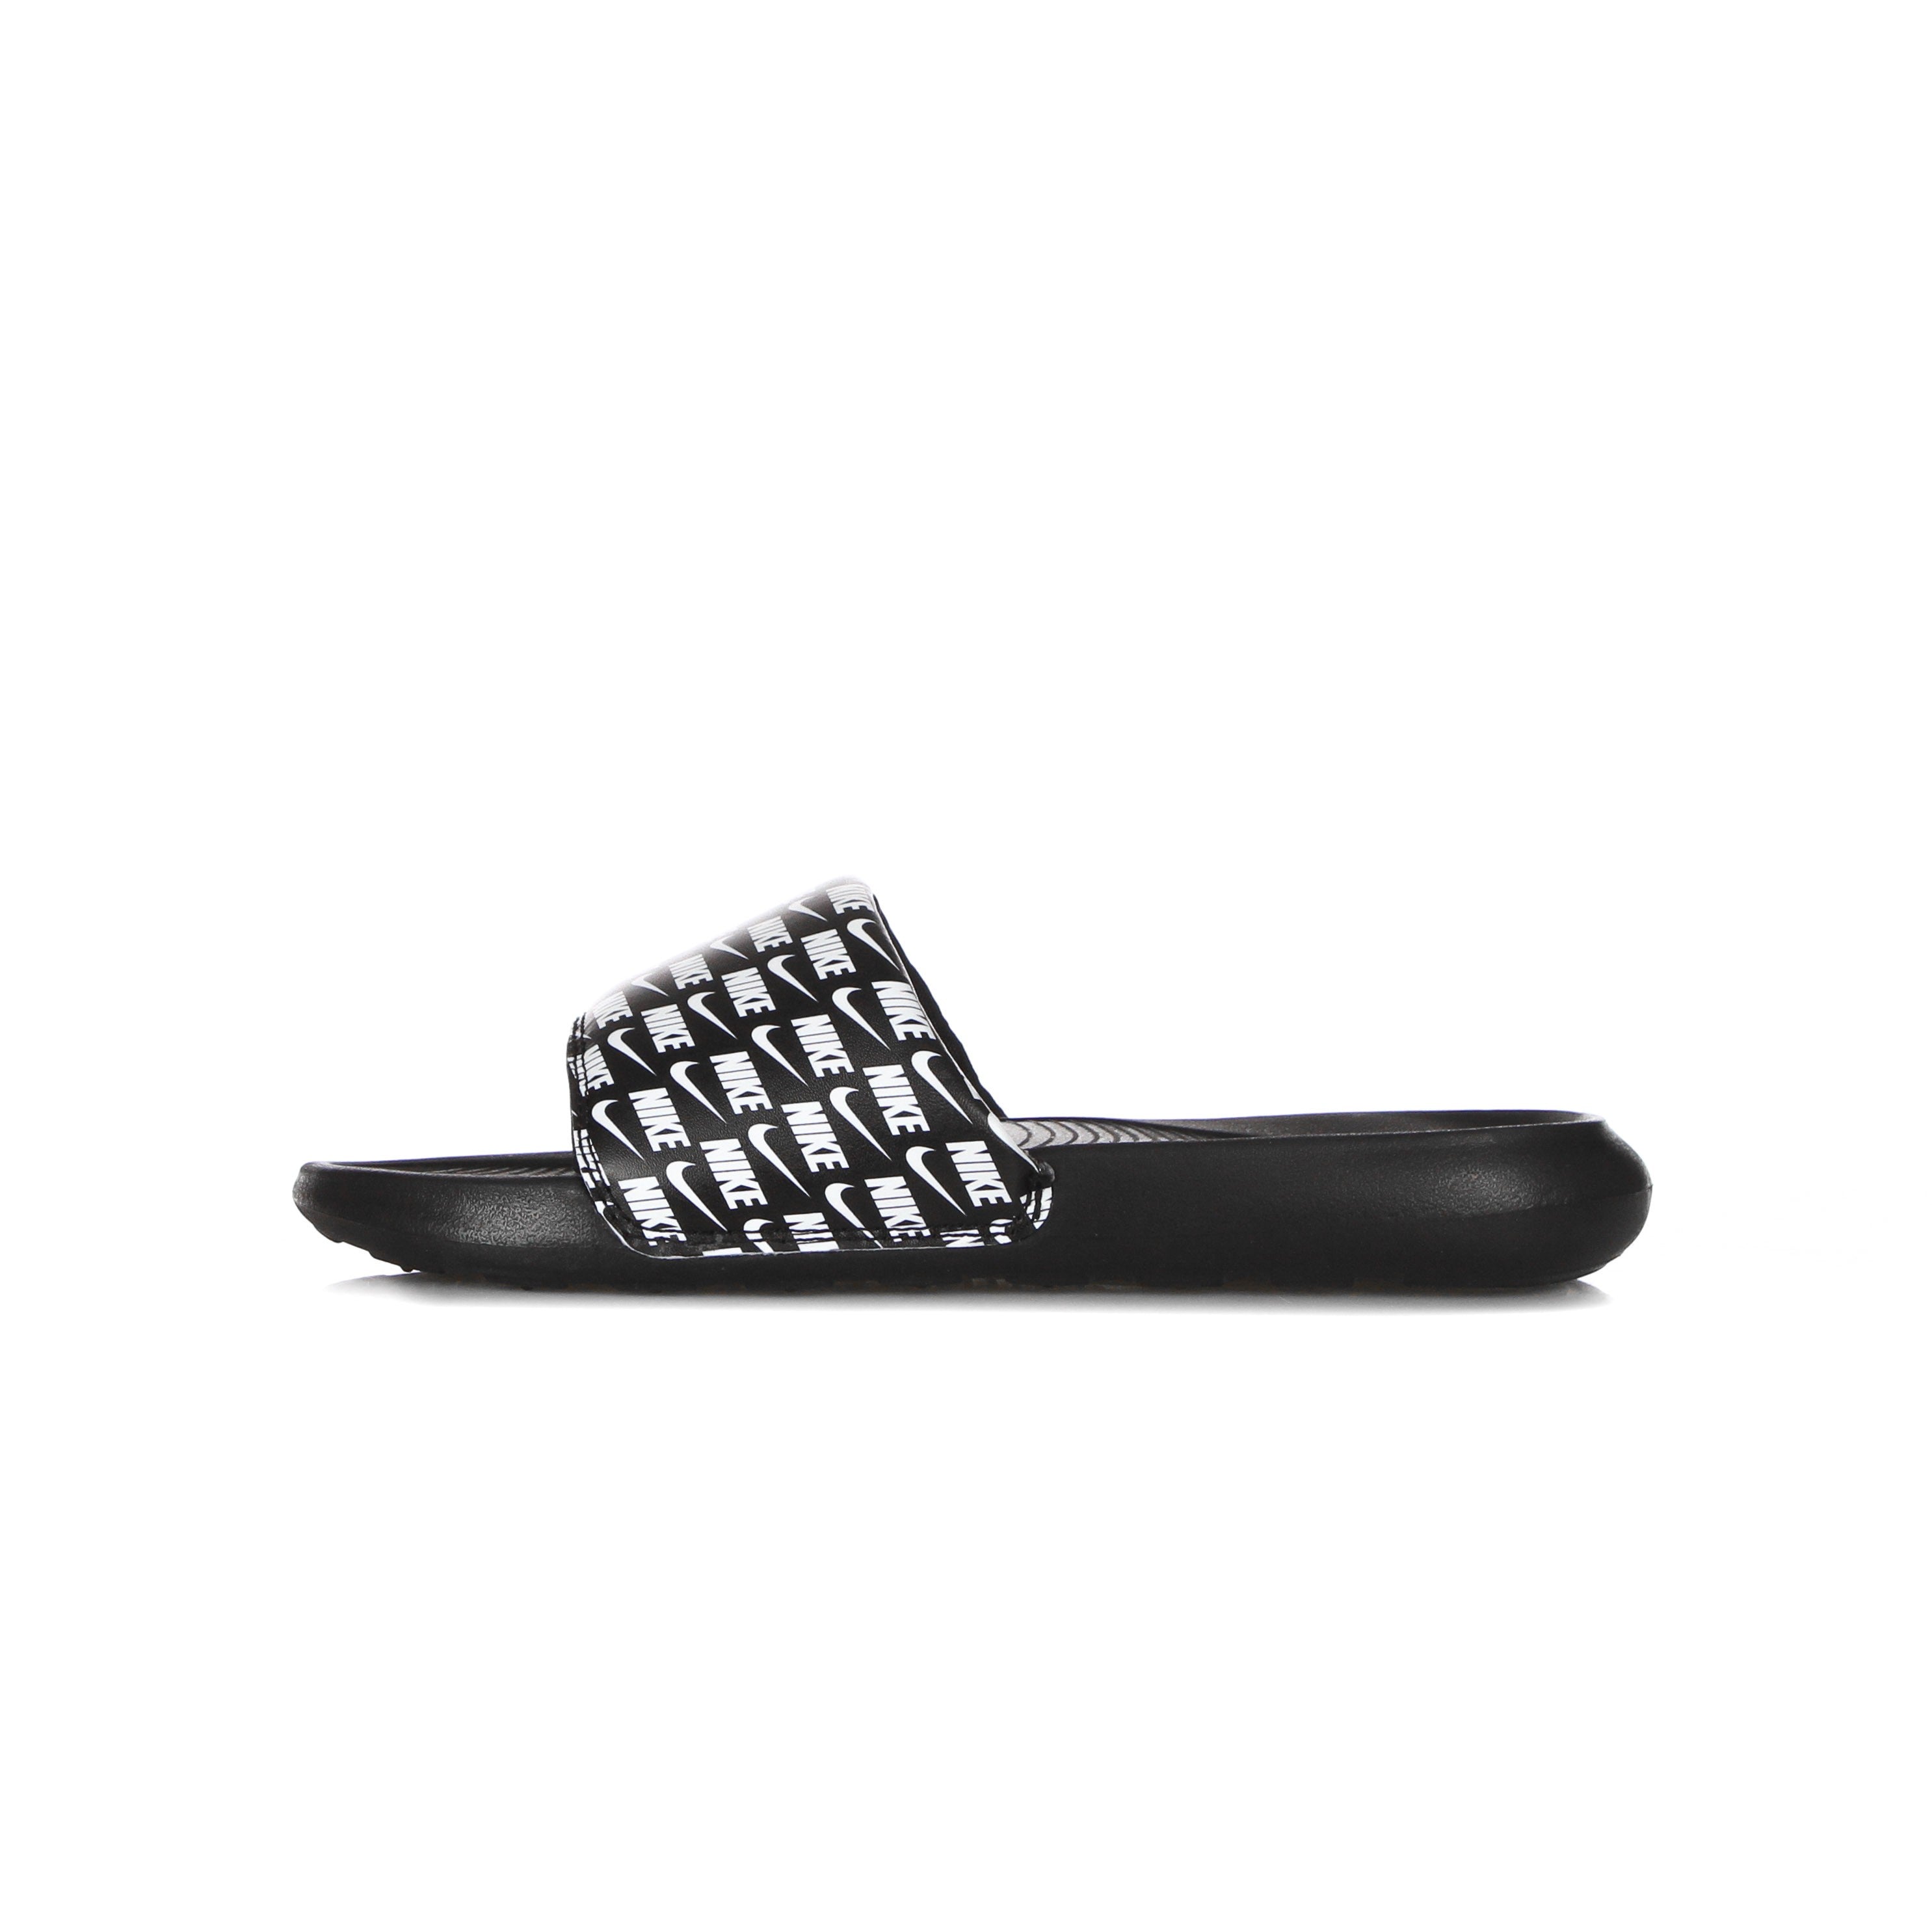 Victori One Slide Print Men's Slippers Black/white/black